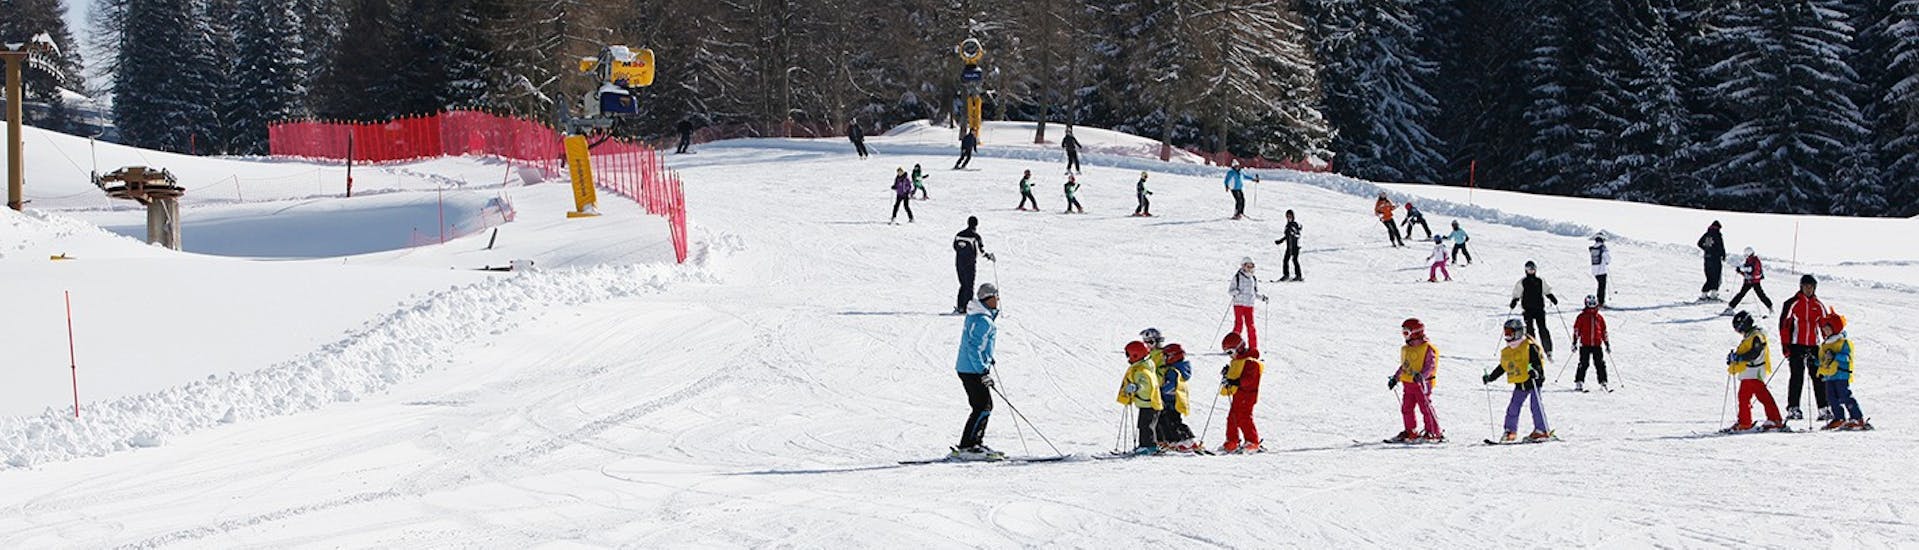 Pistes où se déroulent les Cours de ski pour Enfants (6-14 ans) pour Skieurs Expérimentés - Journée complète avec la Scuola Italiana Sci Folgaria-Serrada.